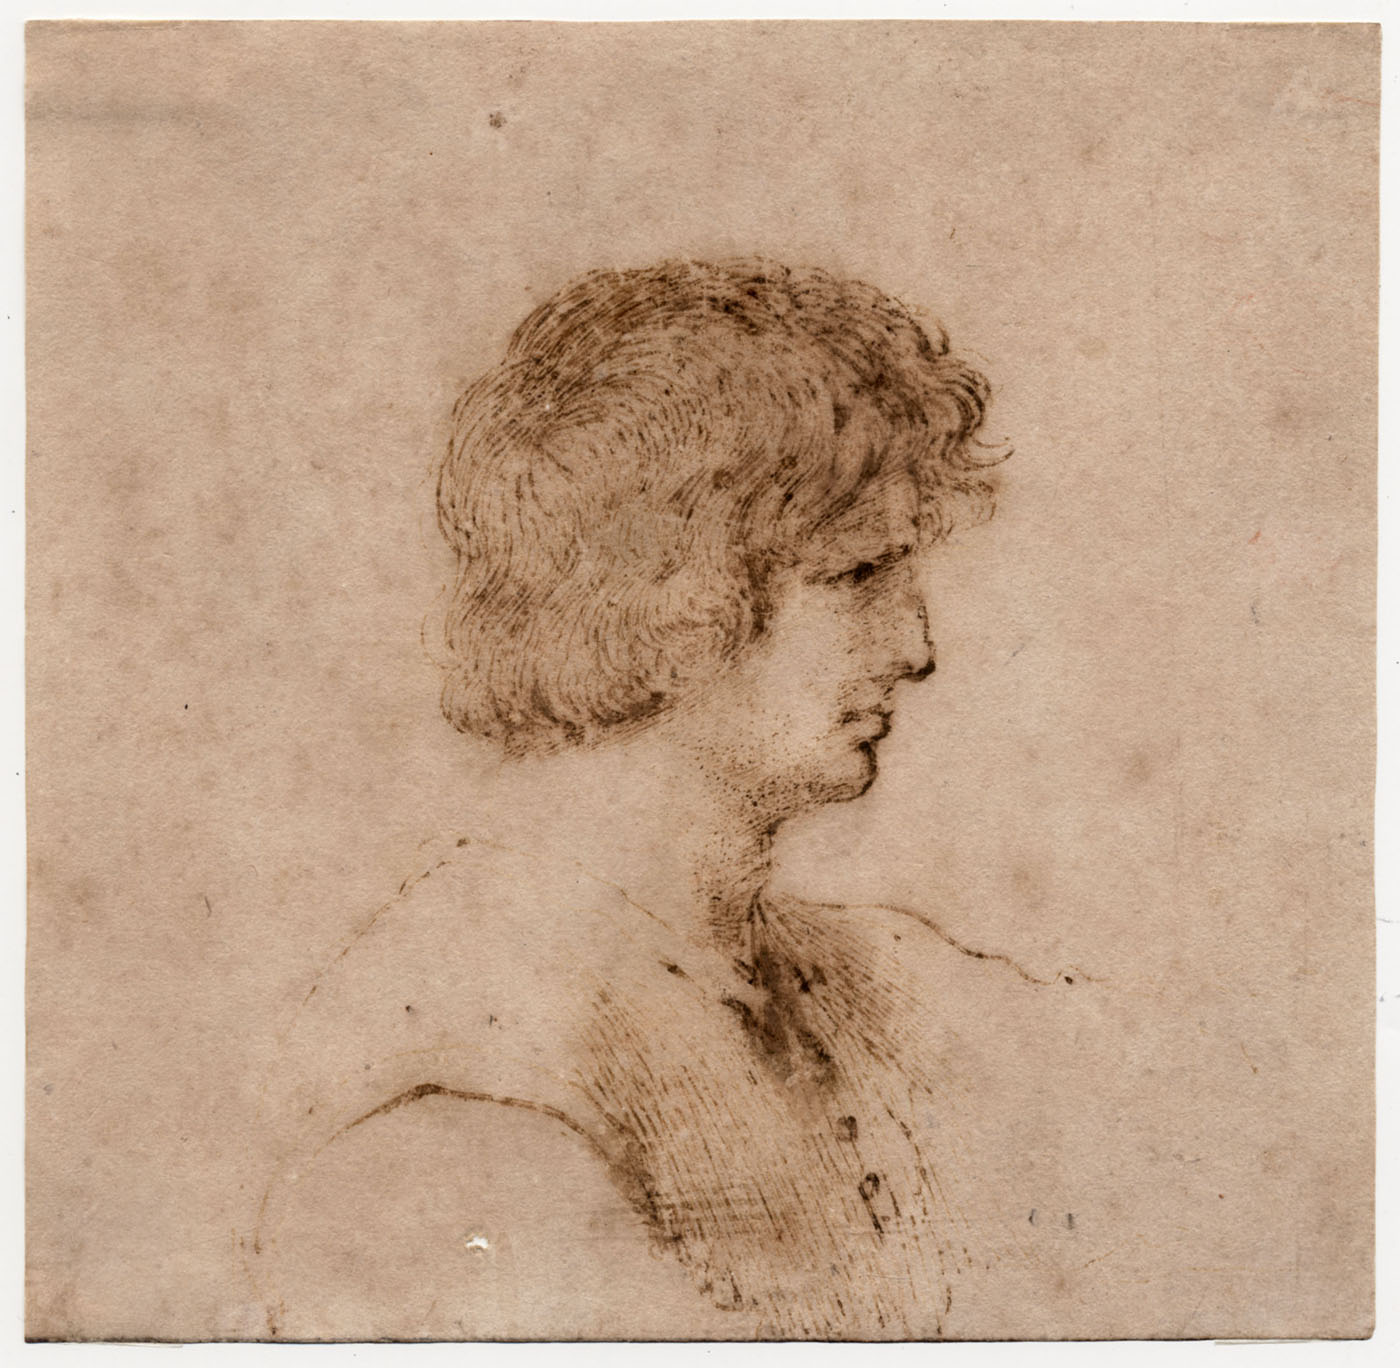 Giovanni Battista Barbieri, called Guercino